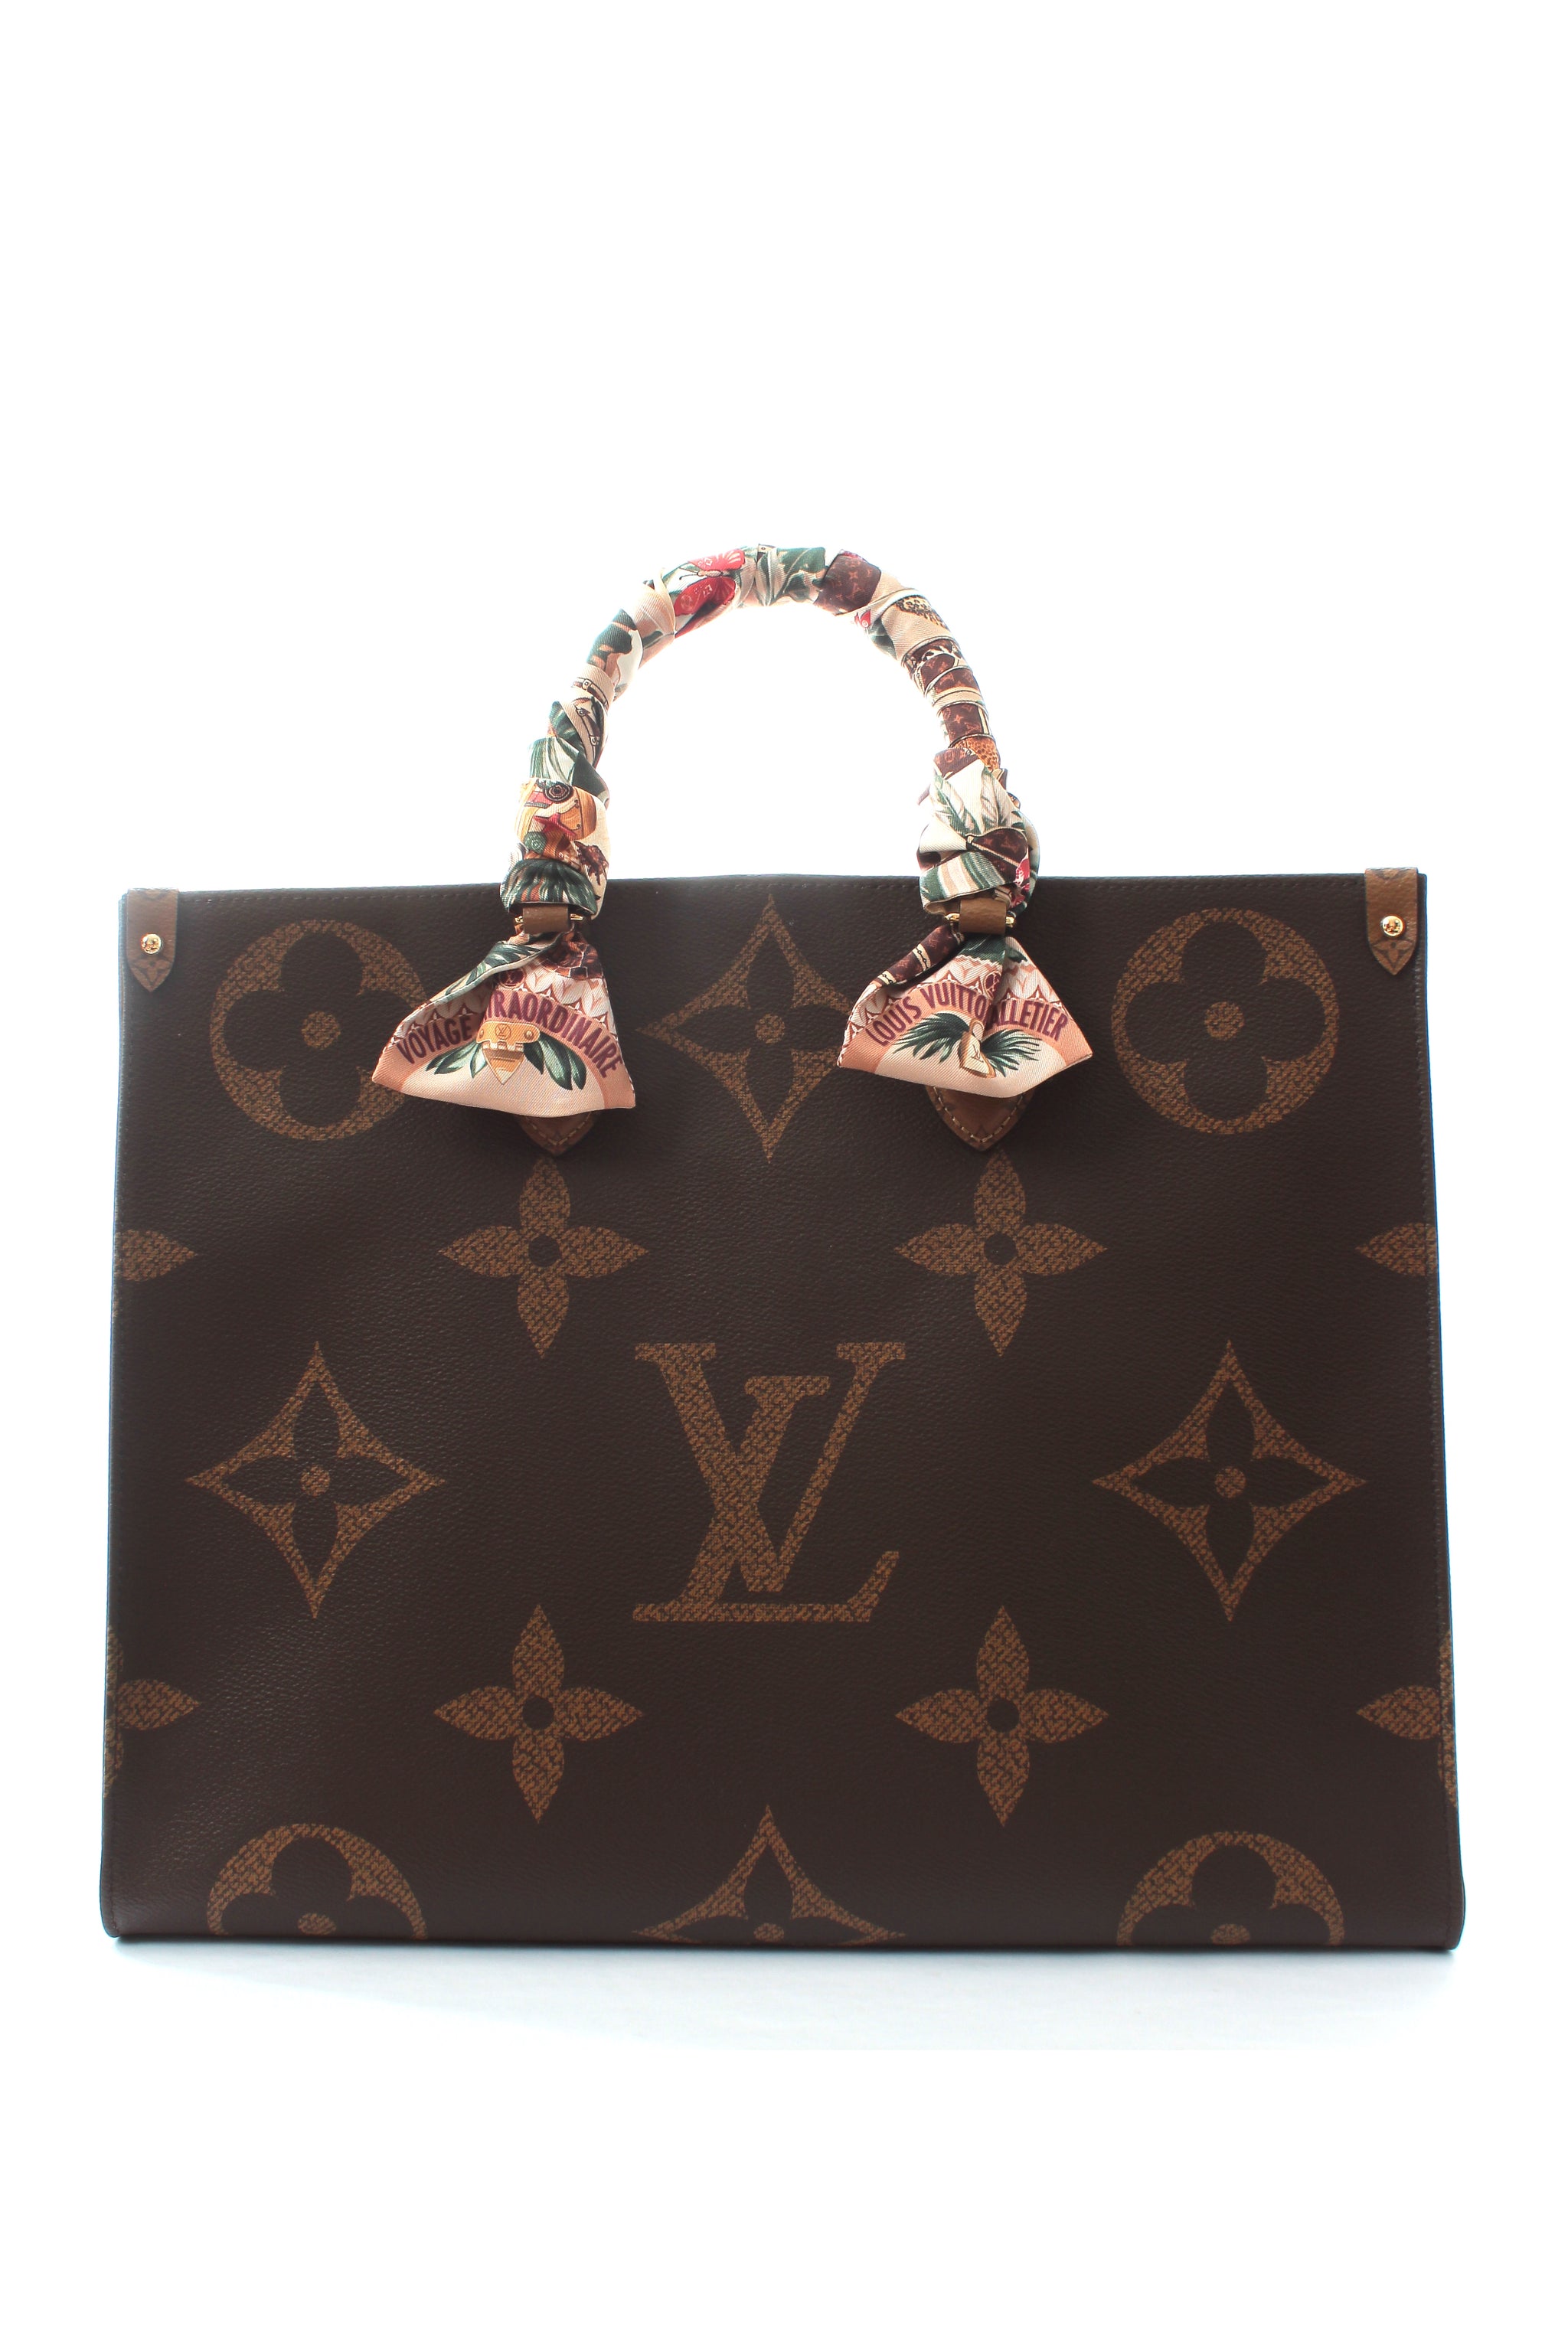 Louis Vuitton Voyage Extraordinaire Bandeau Beige